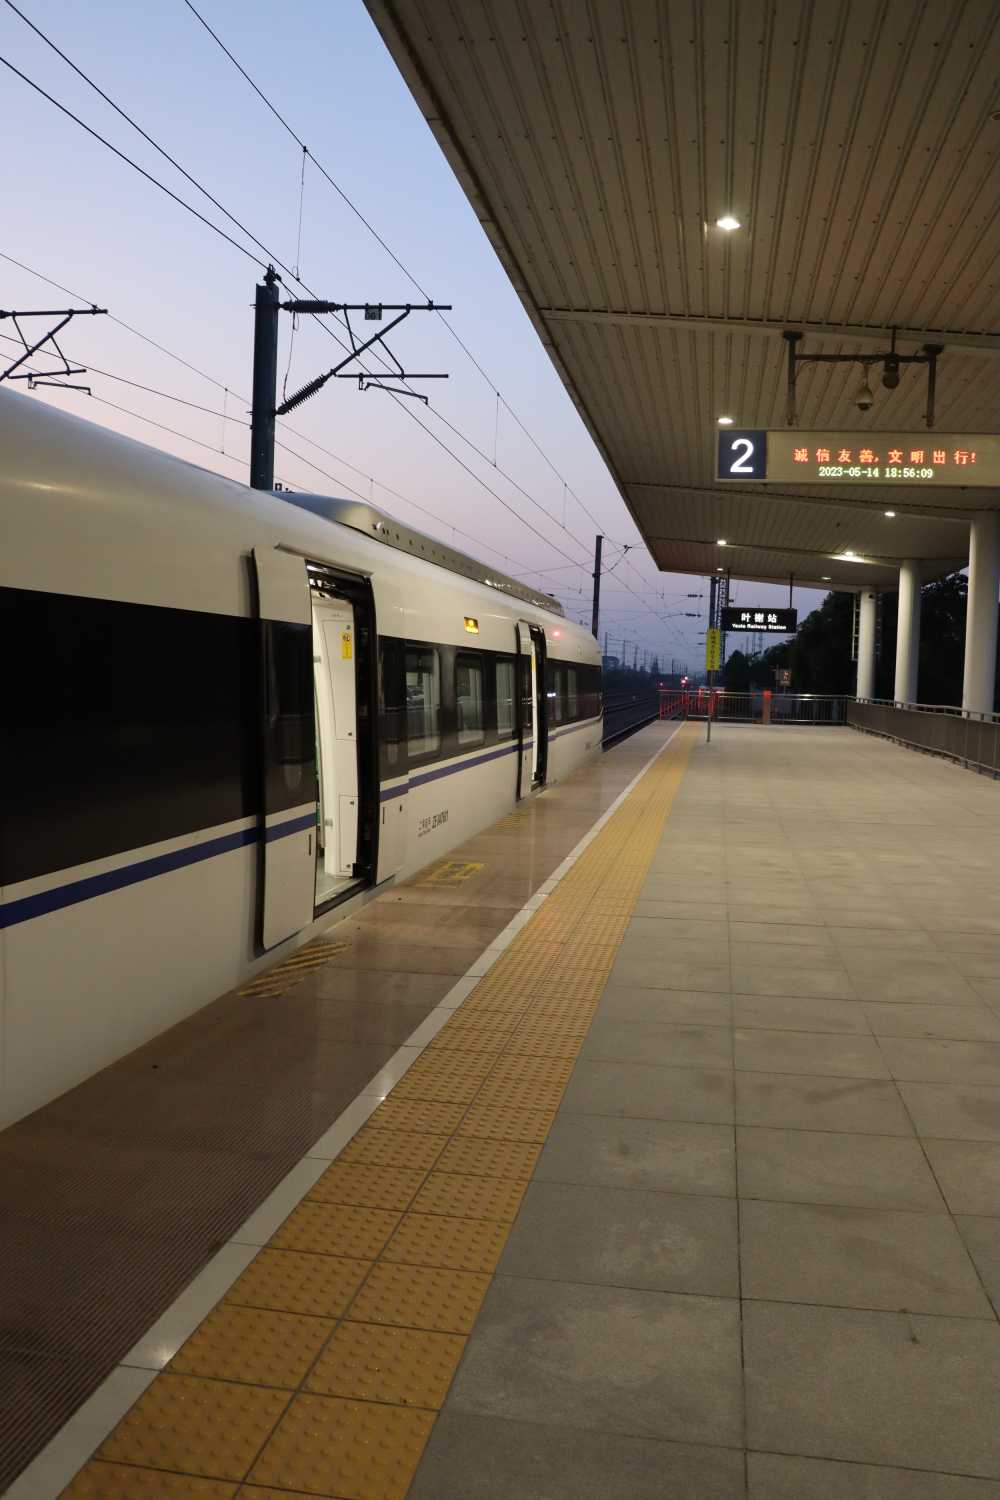 上海金山铁路叶榭车站